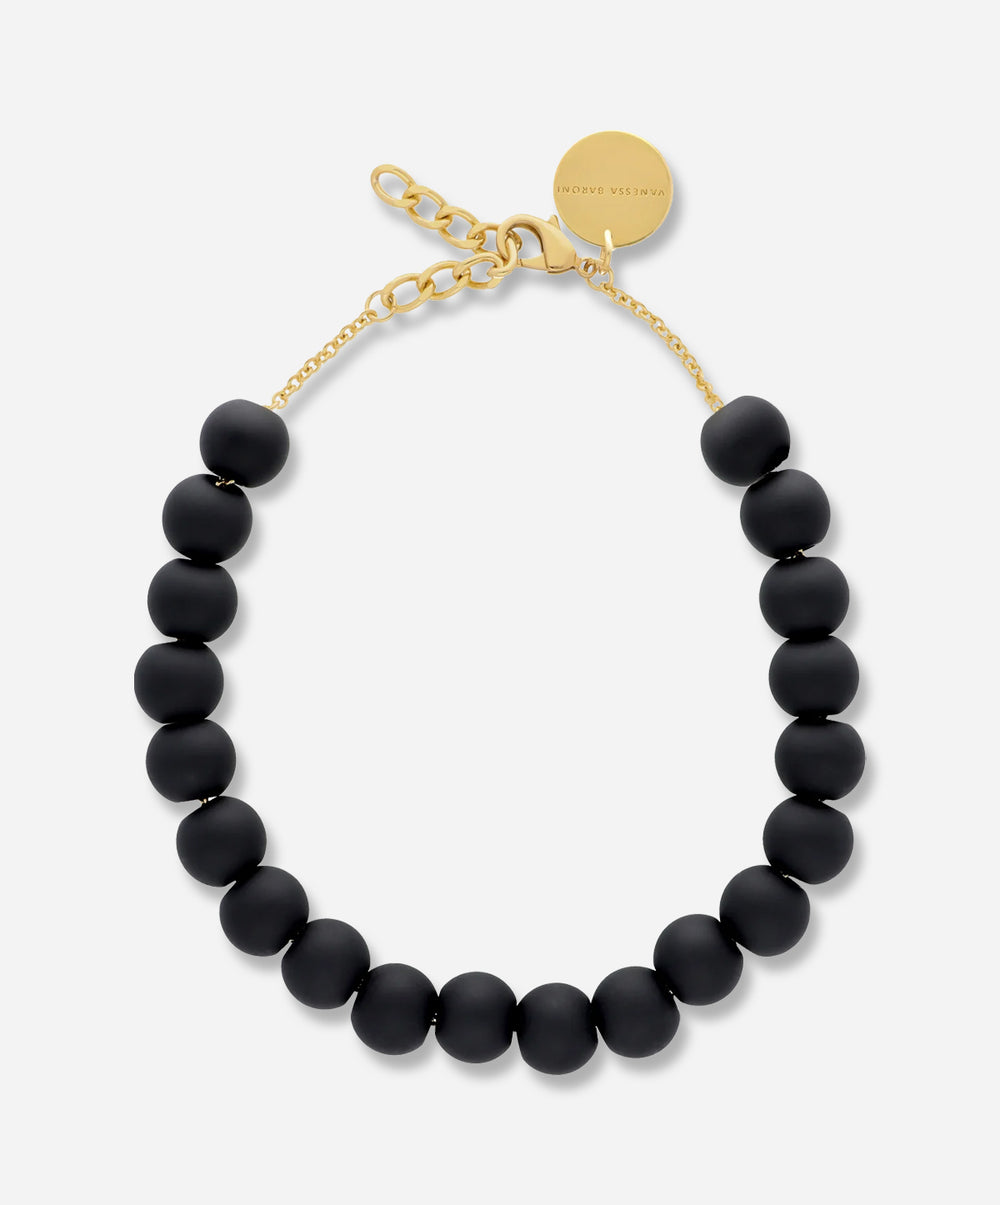 Mala Beads Necklace Small - Kanti Goods